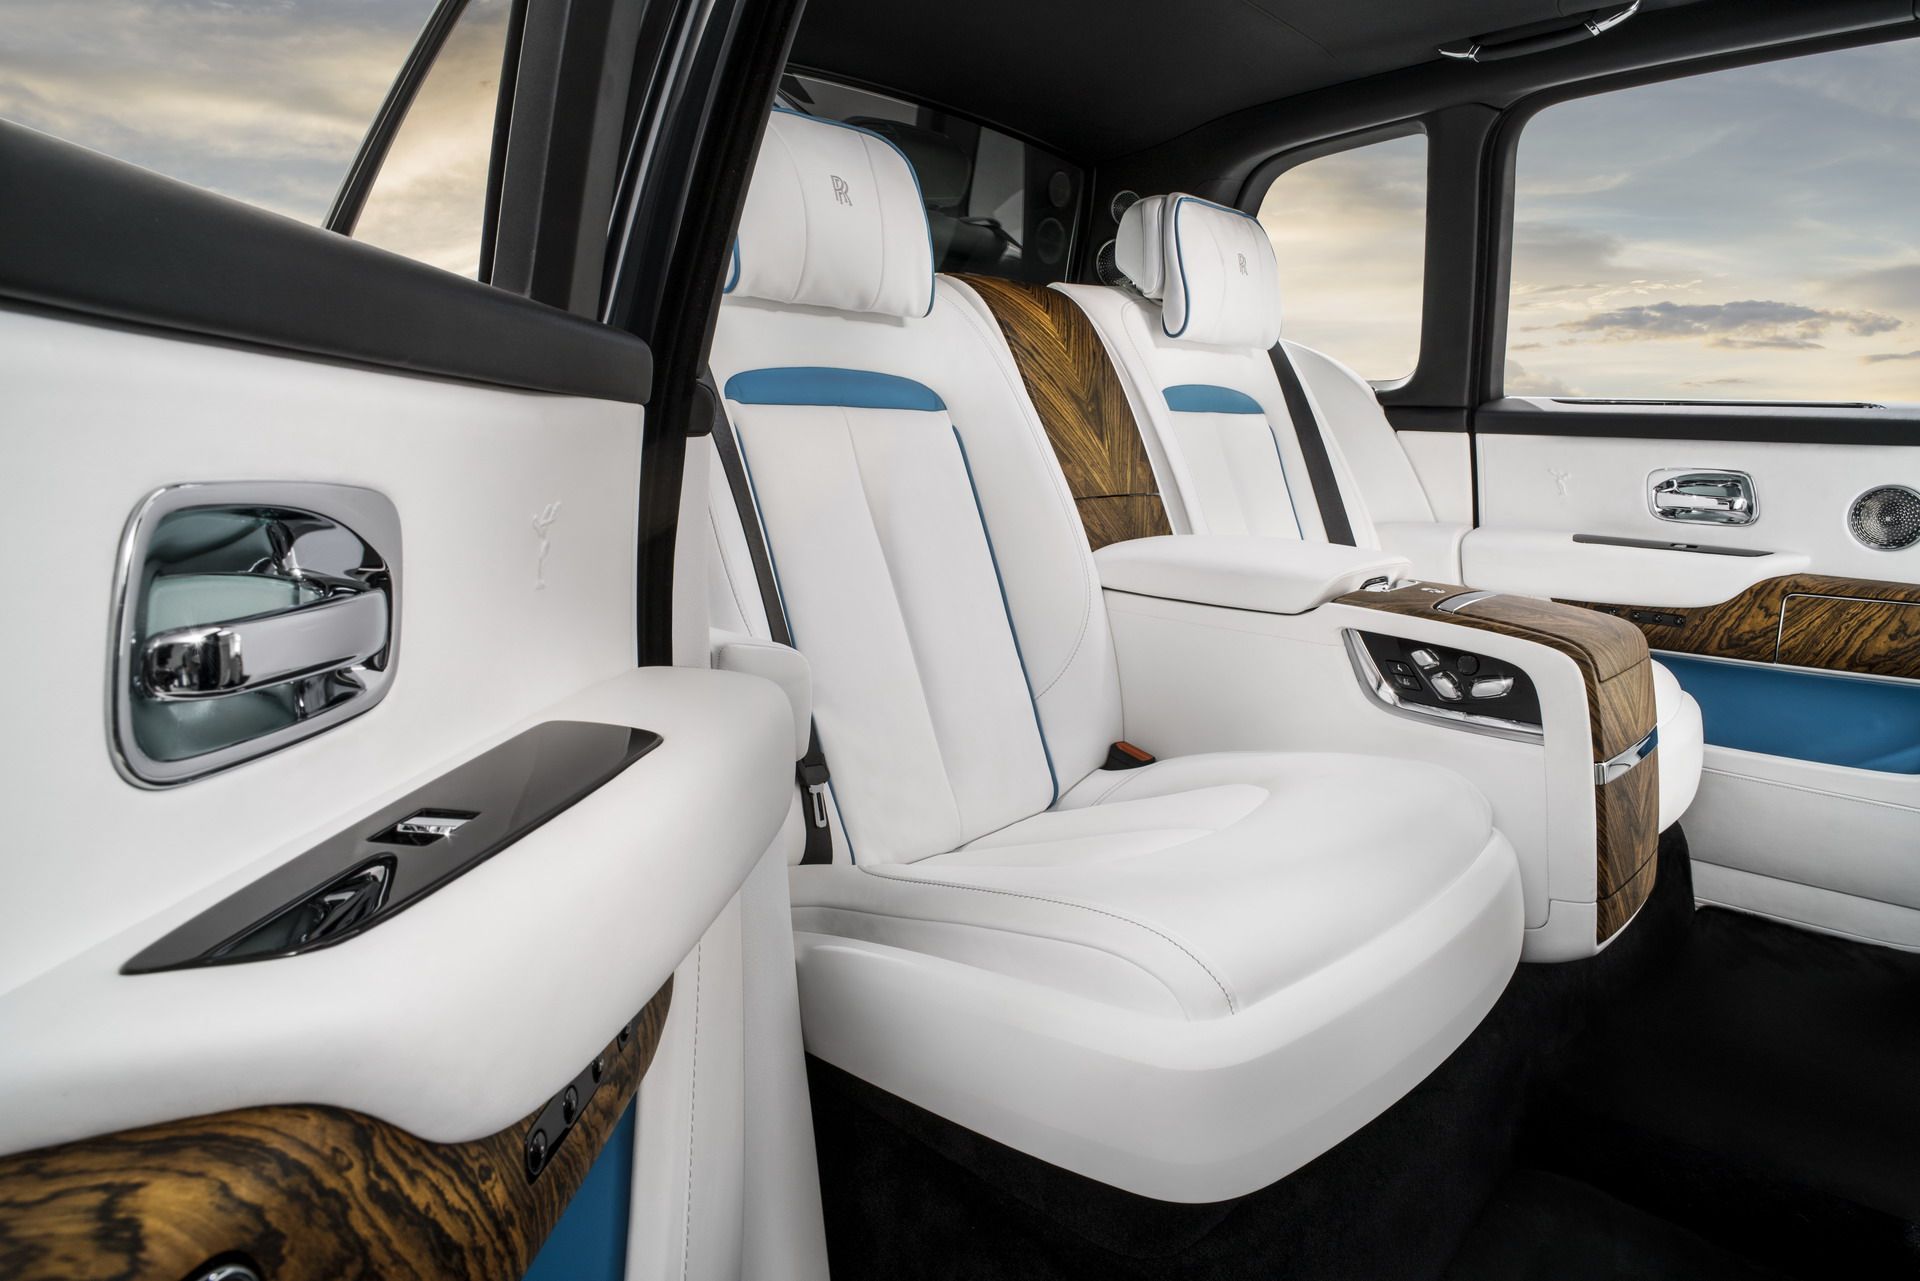 رولز رويس كولينان 2019 افخم SUV في العالم + اهم التقنيات والمواصفات 65